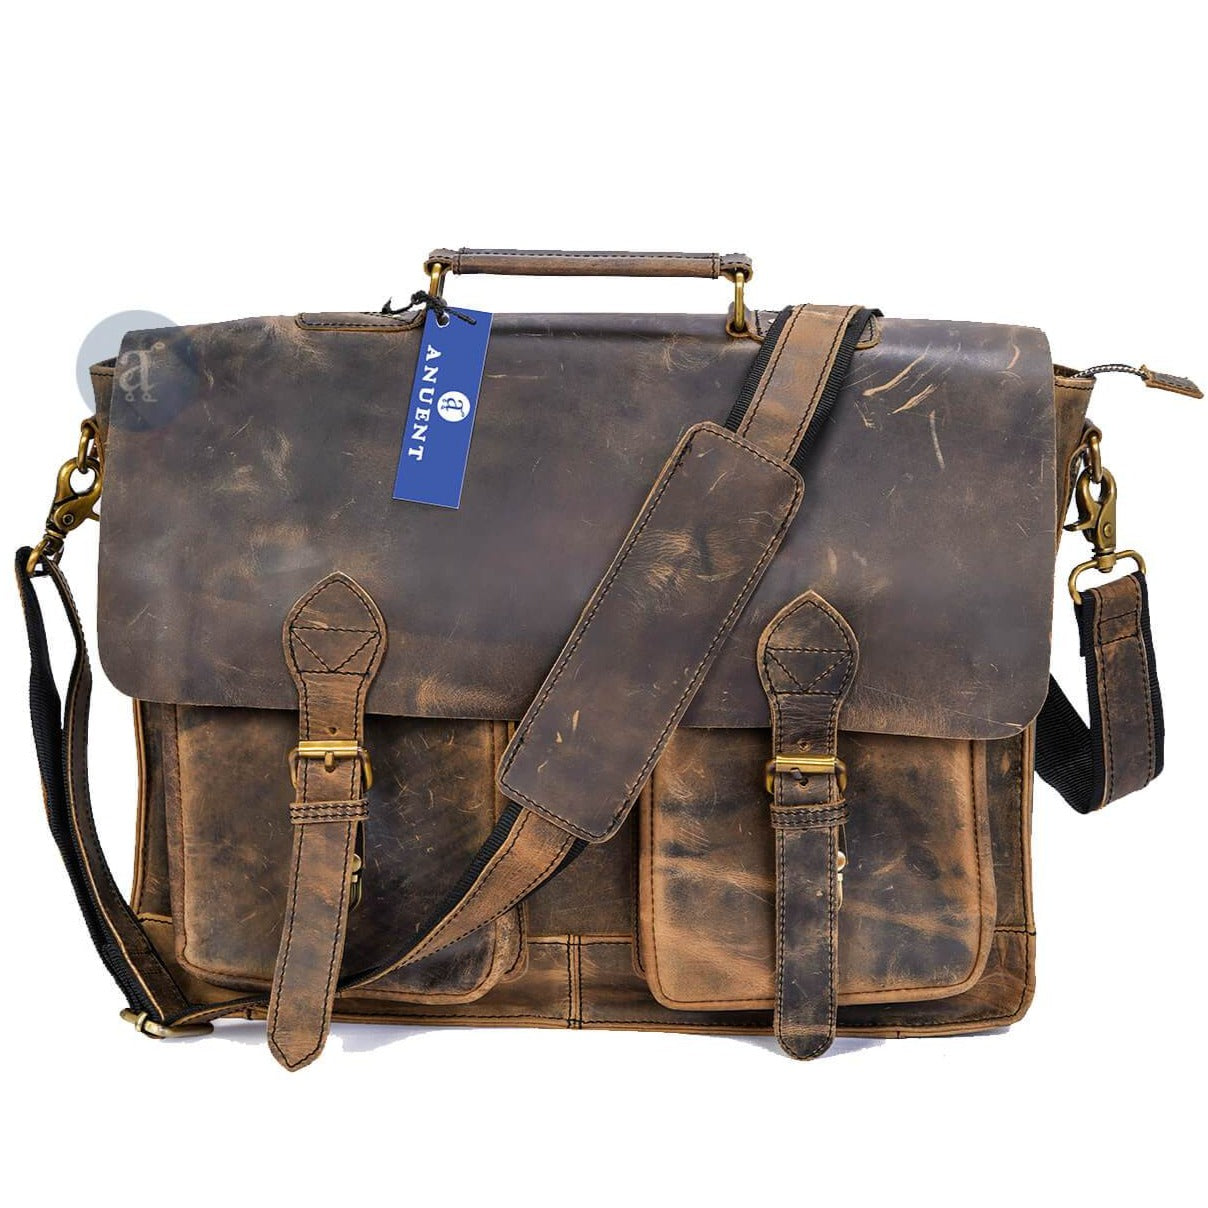 Vintage Leather Messenger Bag With 2 Pockets